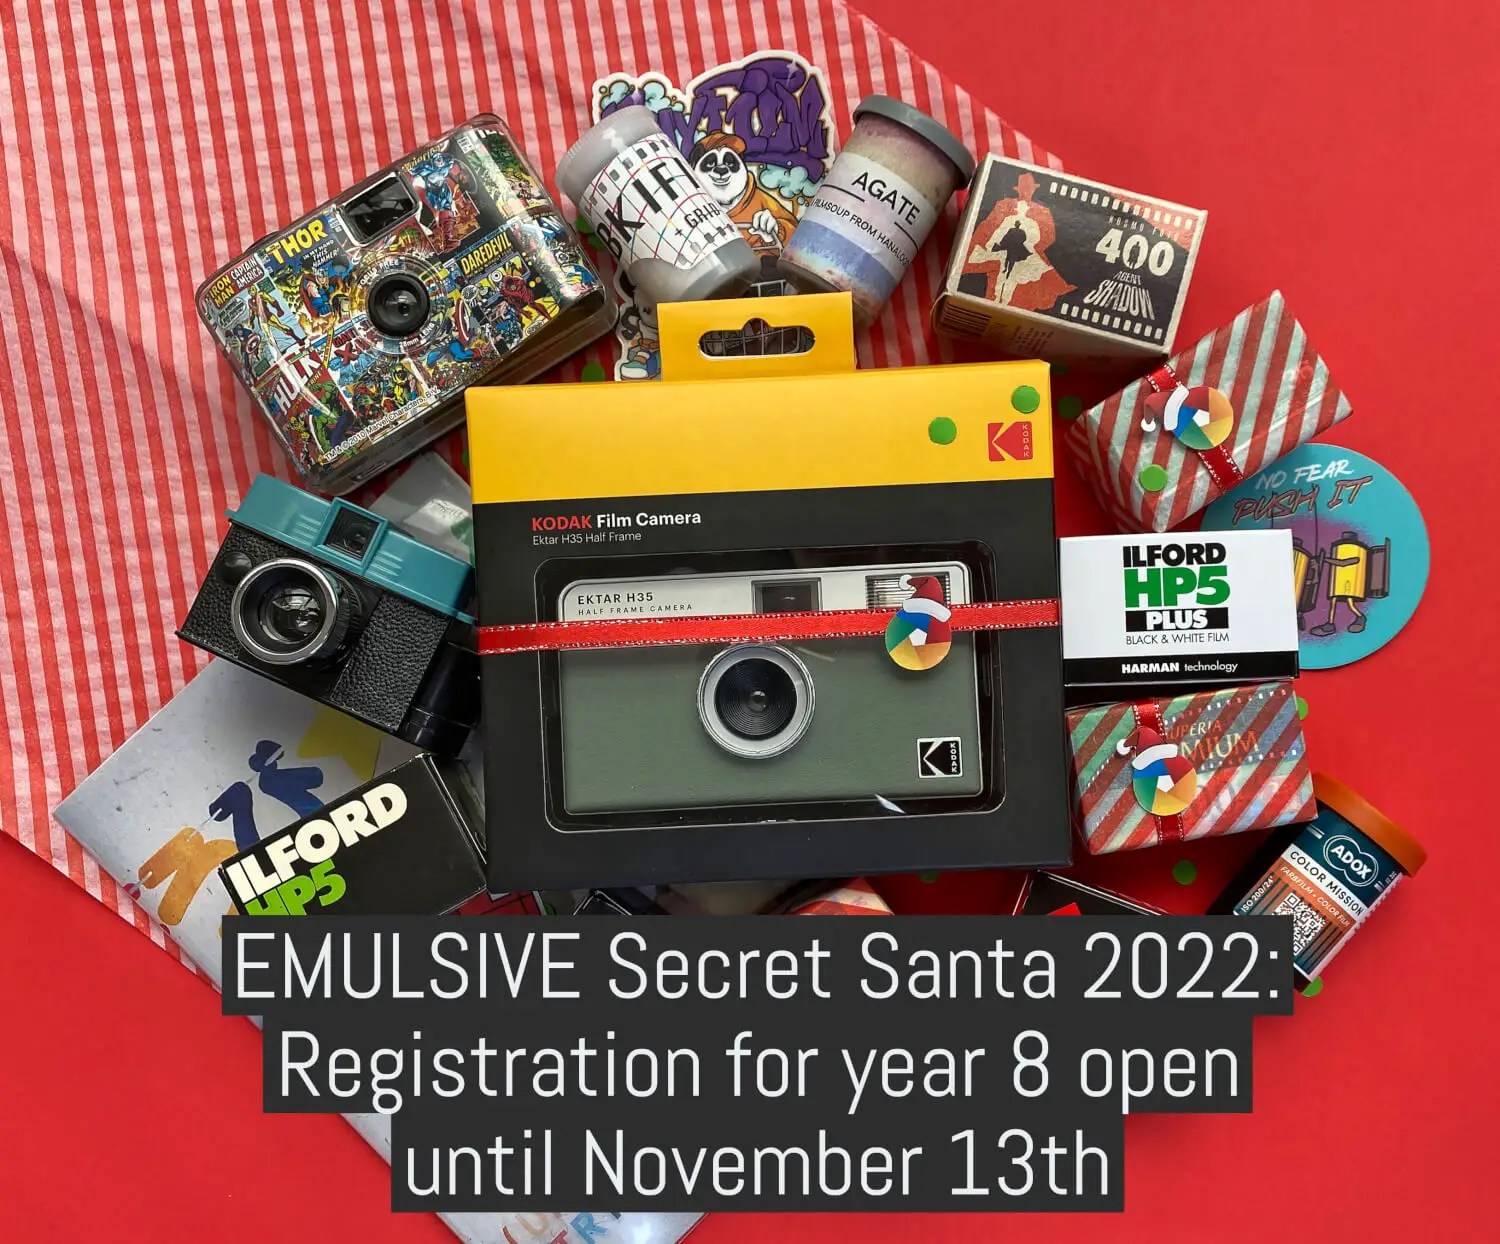 EMULSIVE Secret Santa 2022: Registration for year 8 is open until November 13th